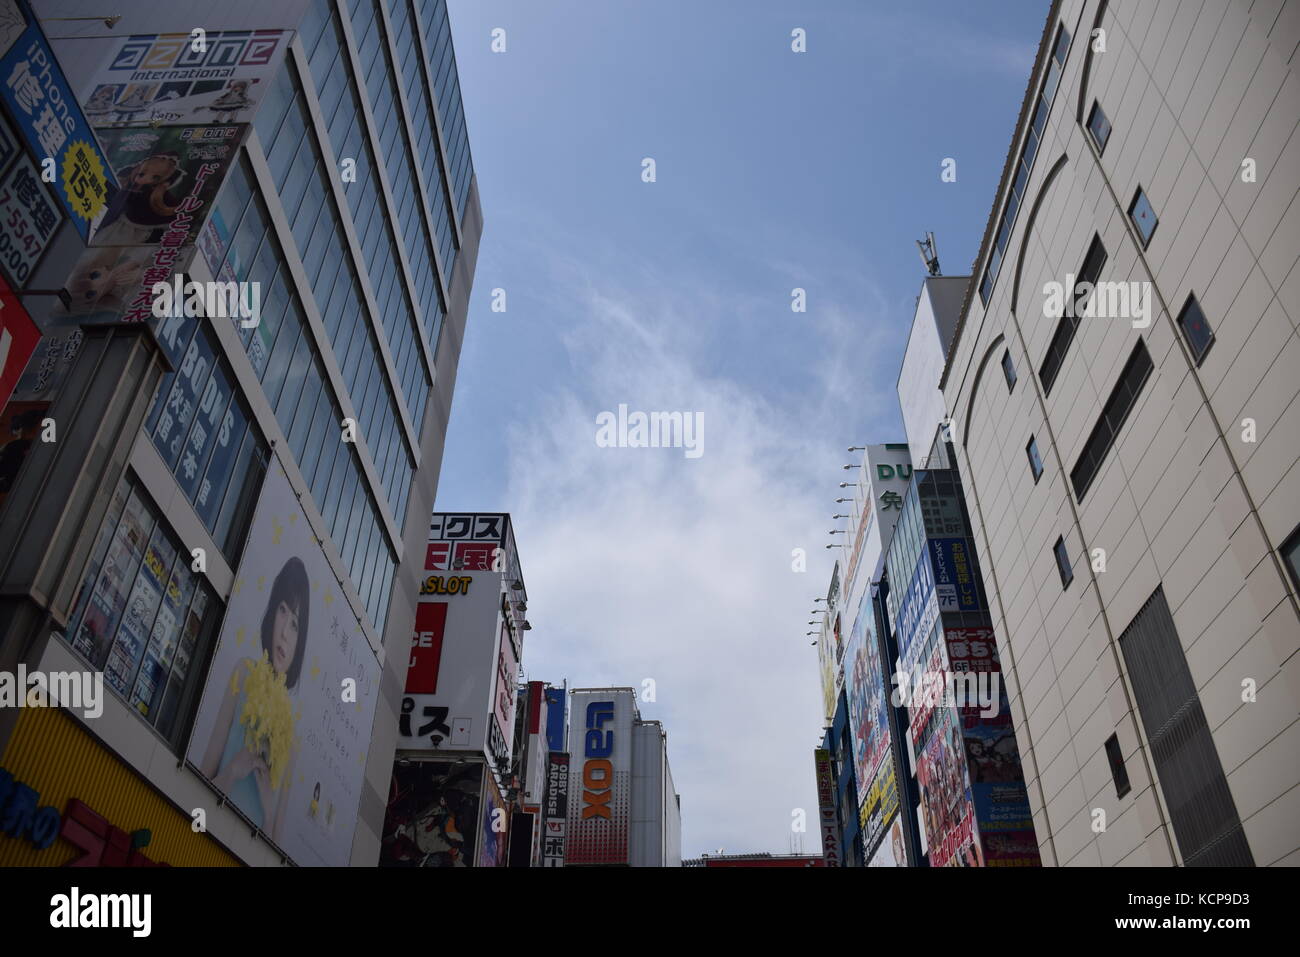 Les publicités sur les bâtiments colorés à Akihabara, le célèbre quartier des boutiques de manga et électronique à Tokyo, Japon Banque D'Images